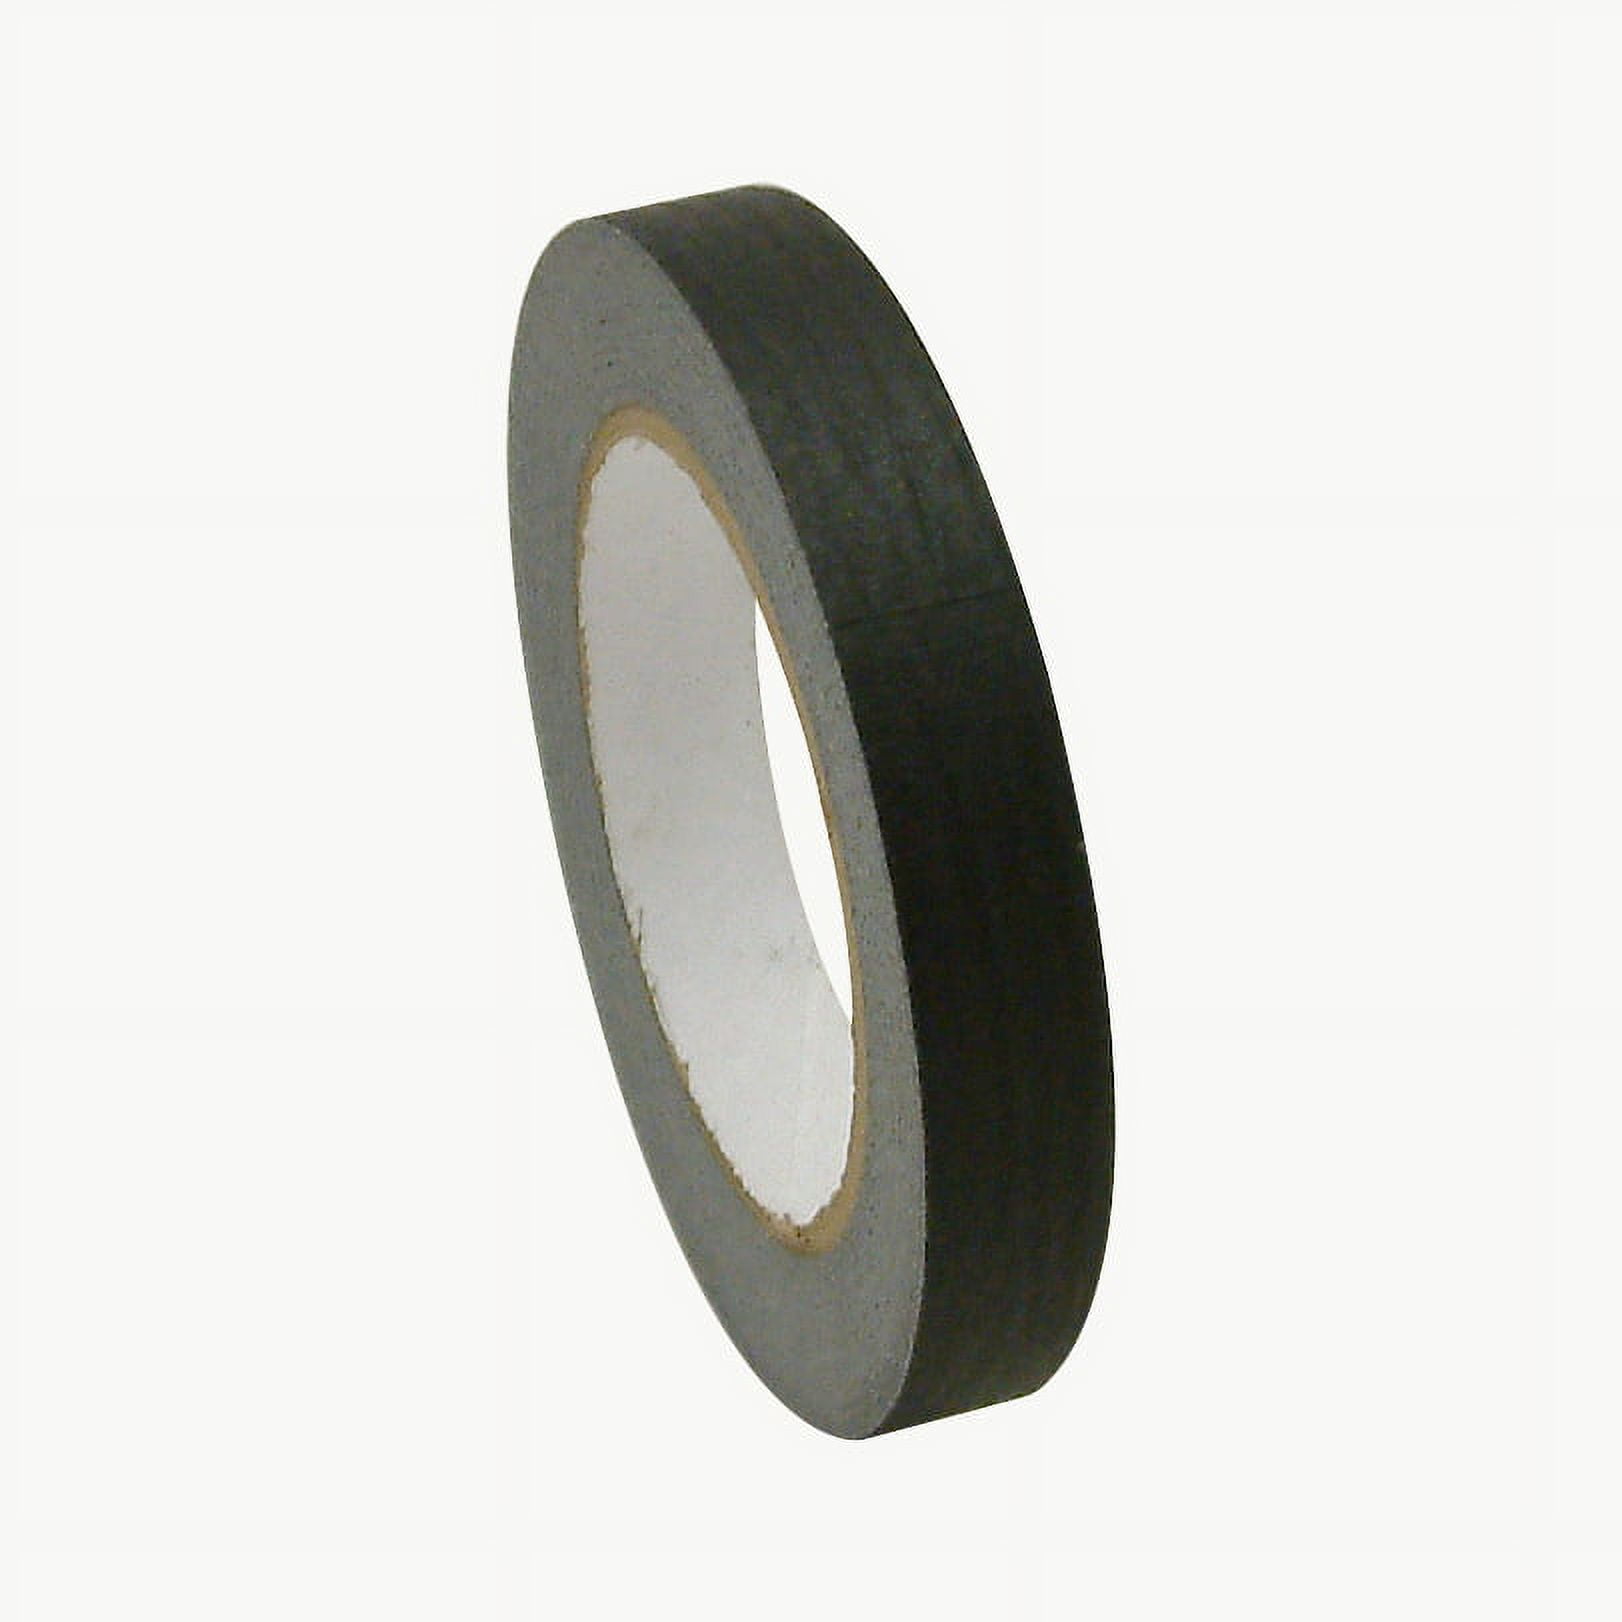 Masking Tape - 1/2 x 60 yds, Black S-15894BL - Uline